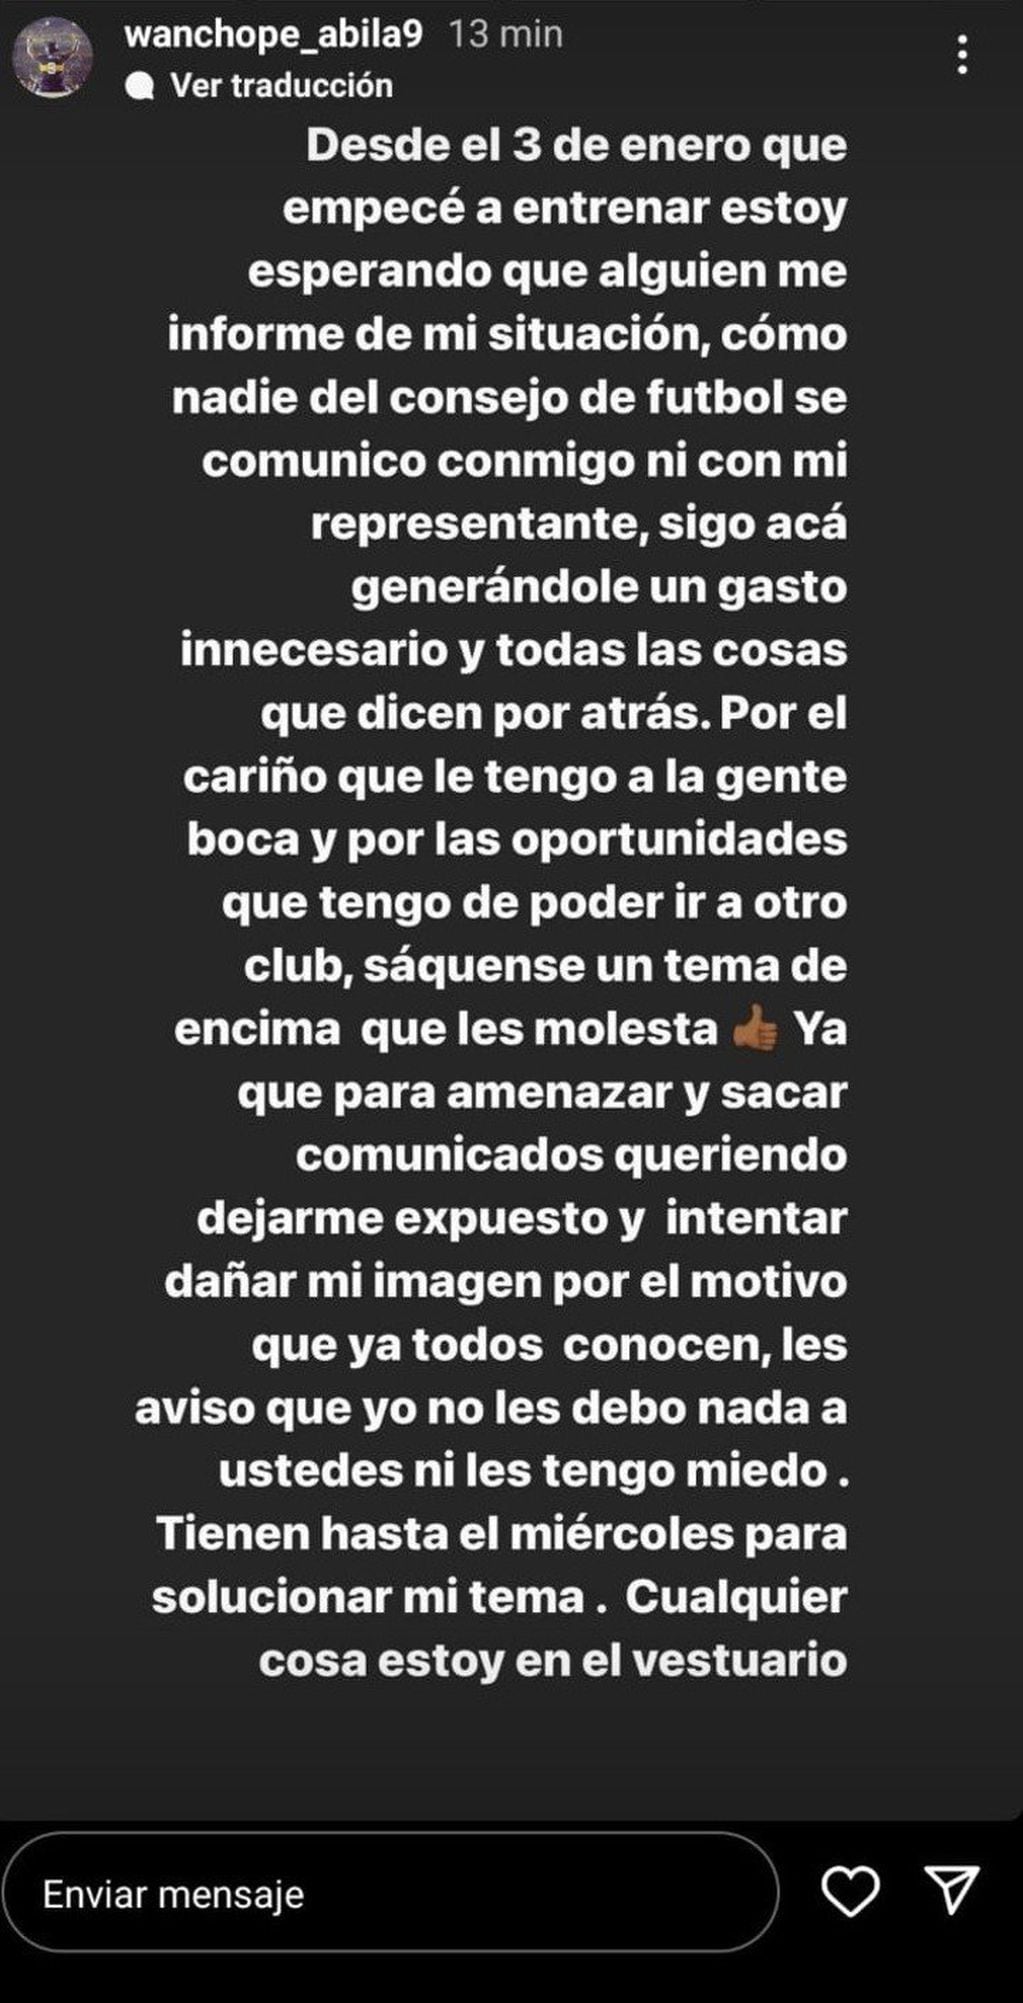 El mensaje completo de Wanchpe Ábila contra el Consejo de Fútbol de Juan Román Riquelme